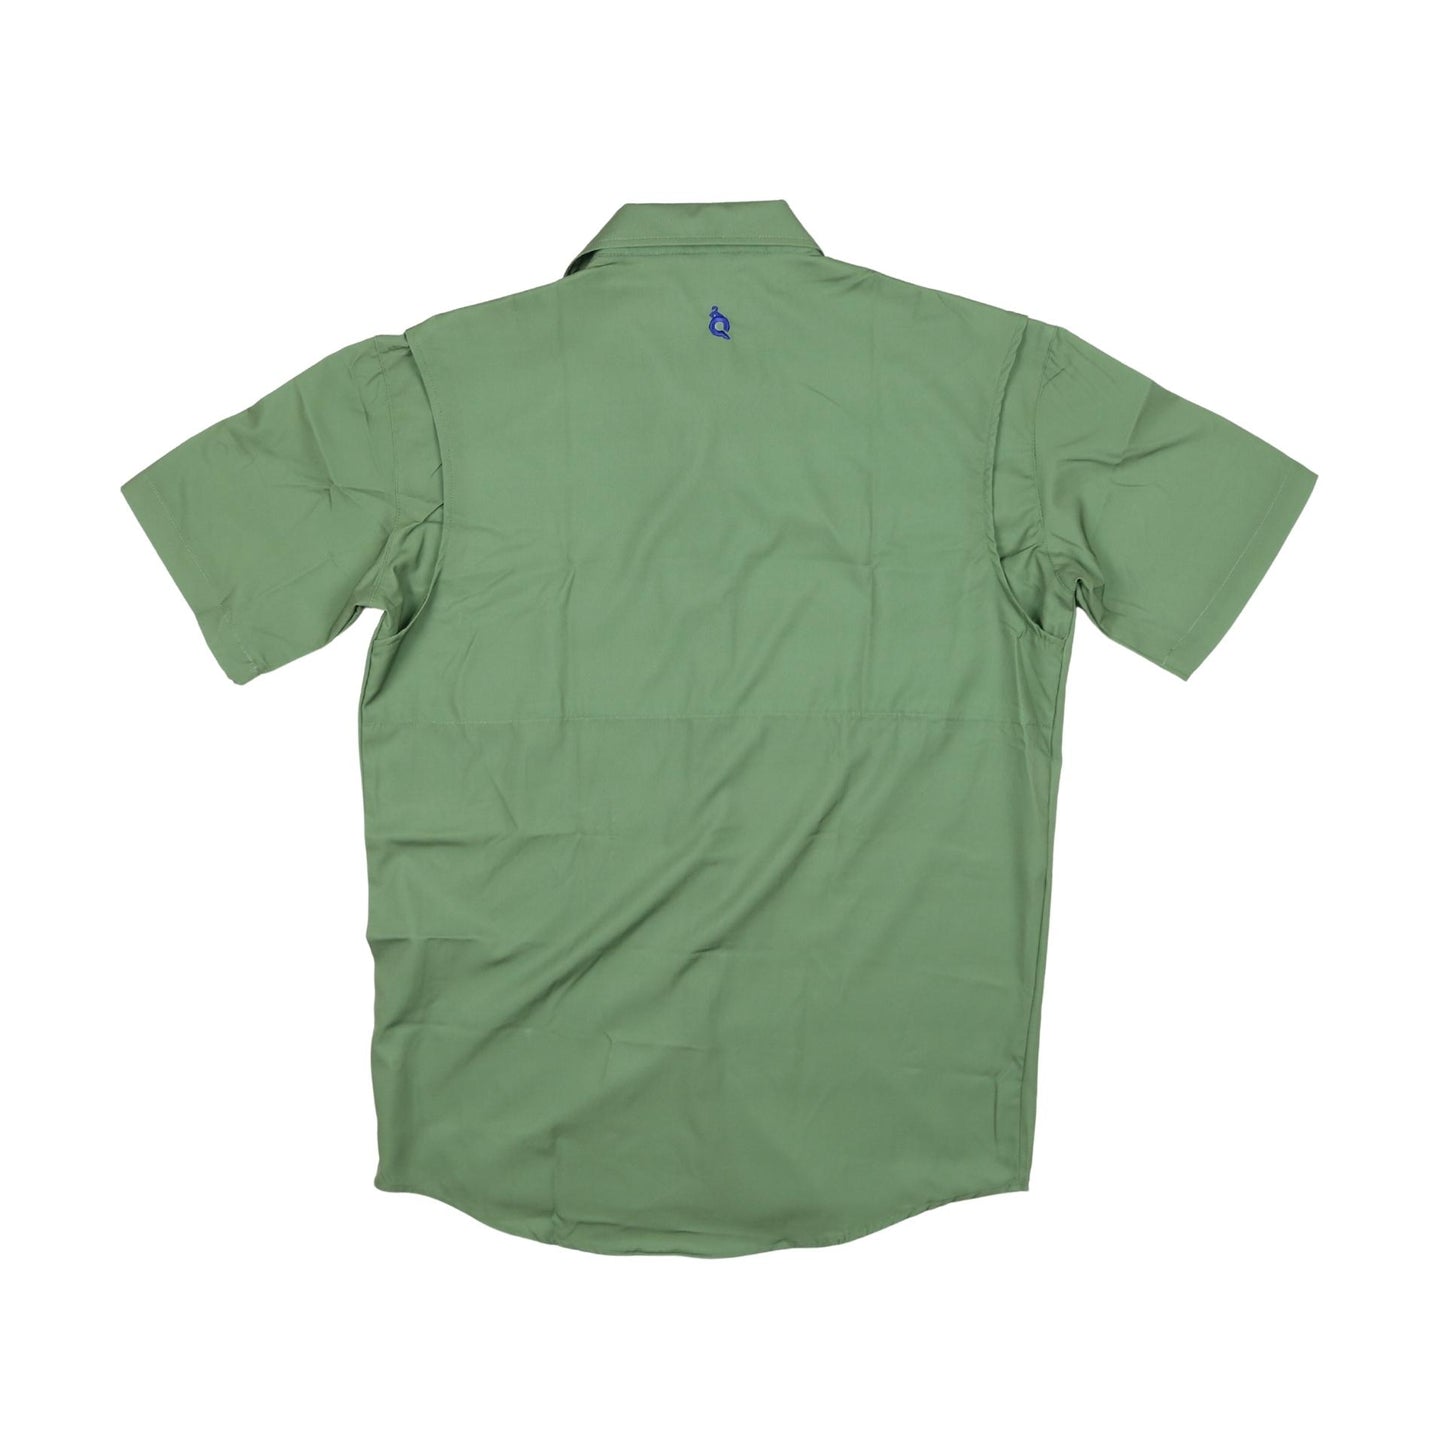 Men’s - Sage & Khaki Short Sleeve Shirt